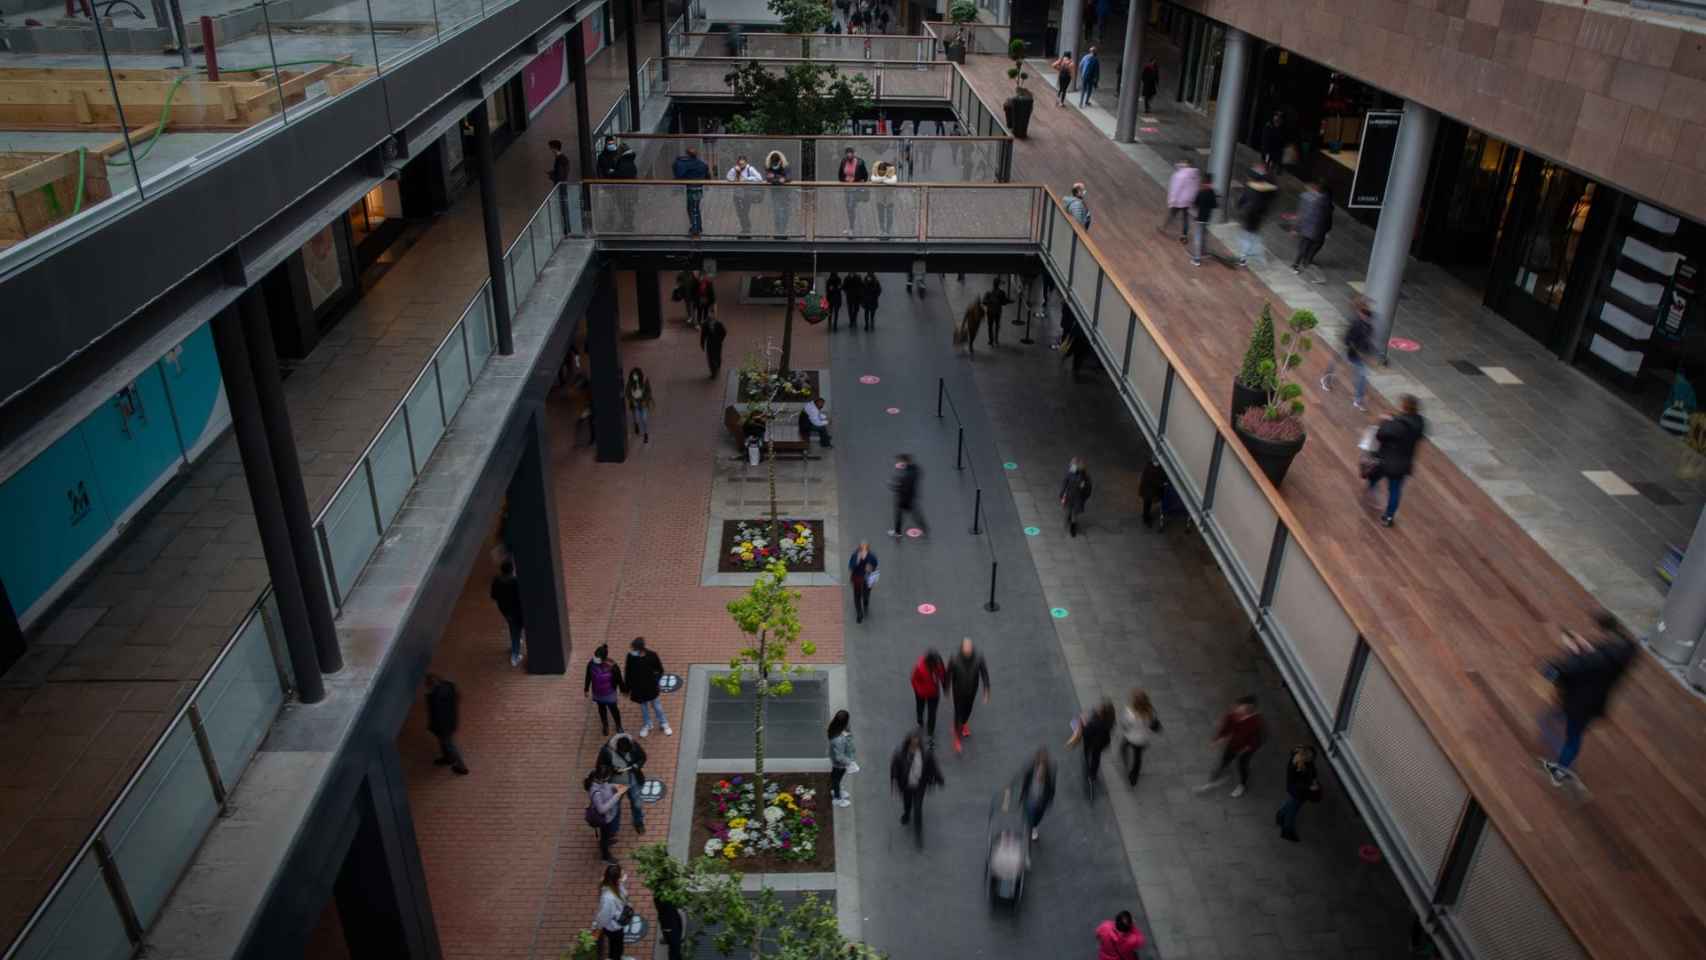 Centro comercial La Maquinista de Barcelona durante el primer día de reapertura en la fase 1,5 / EUROPA PRESS